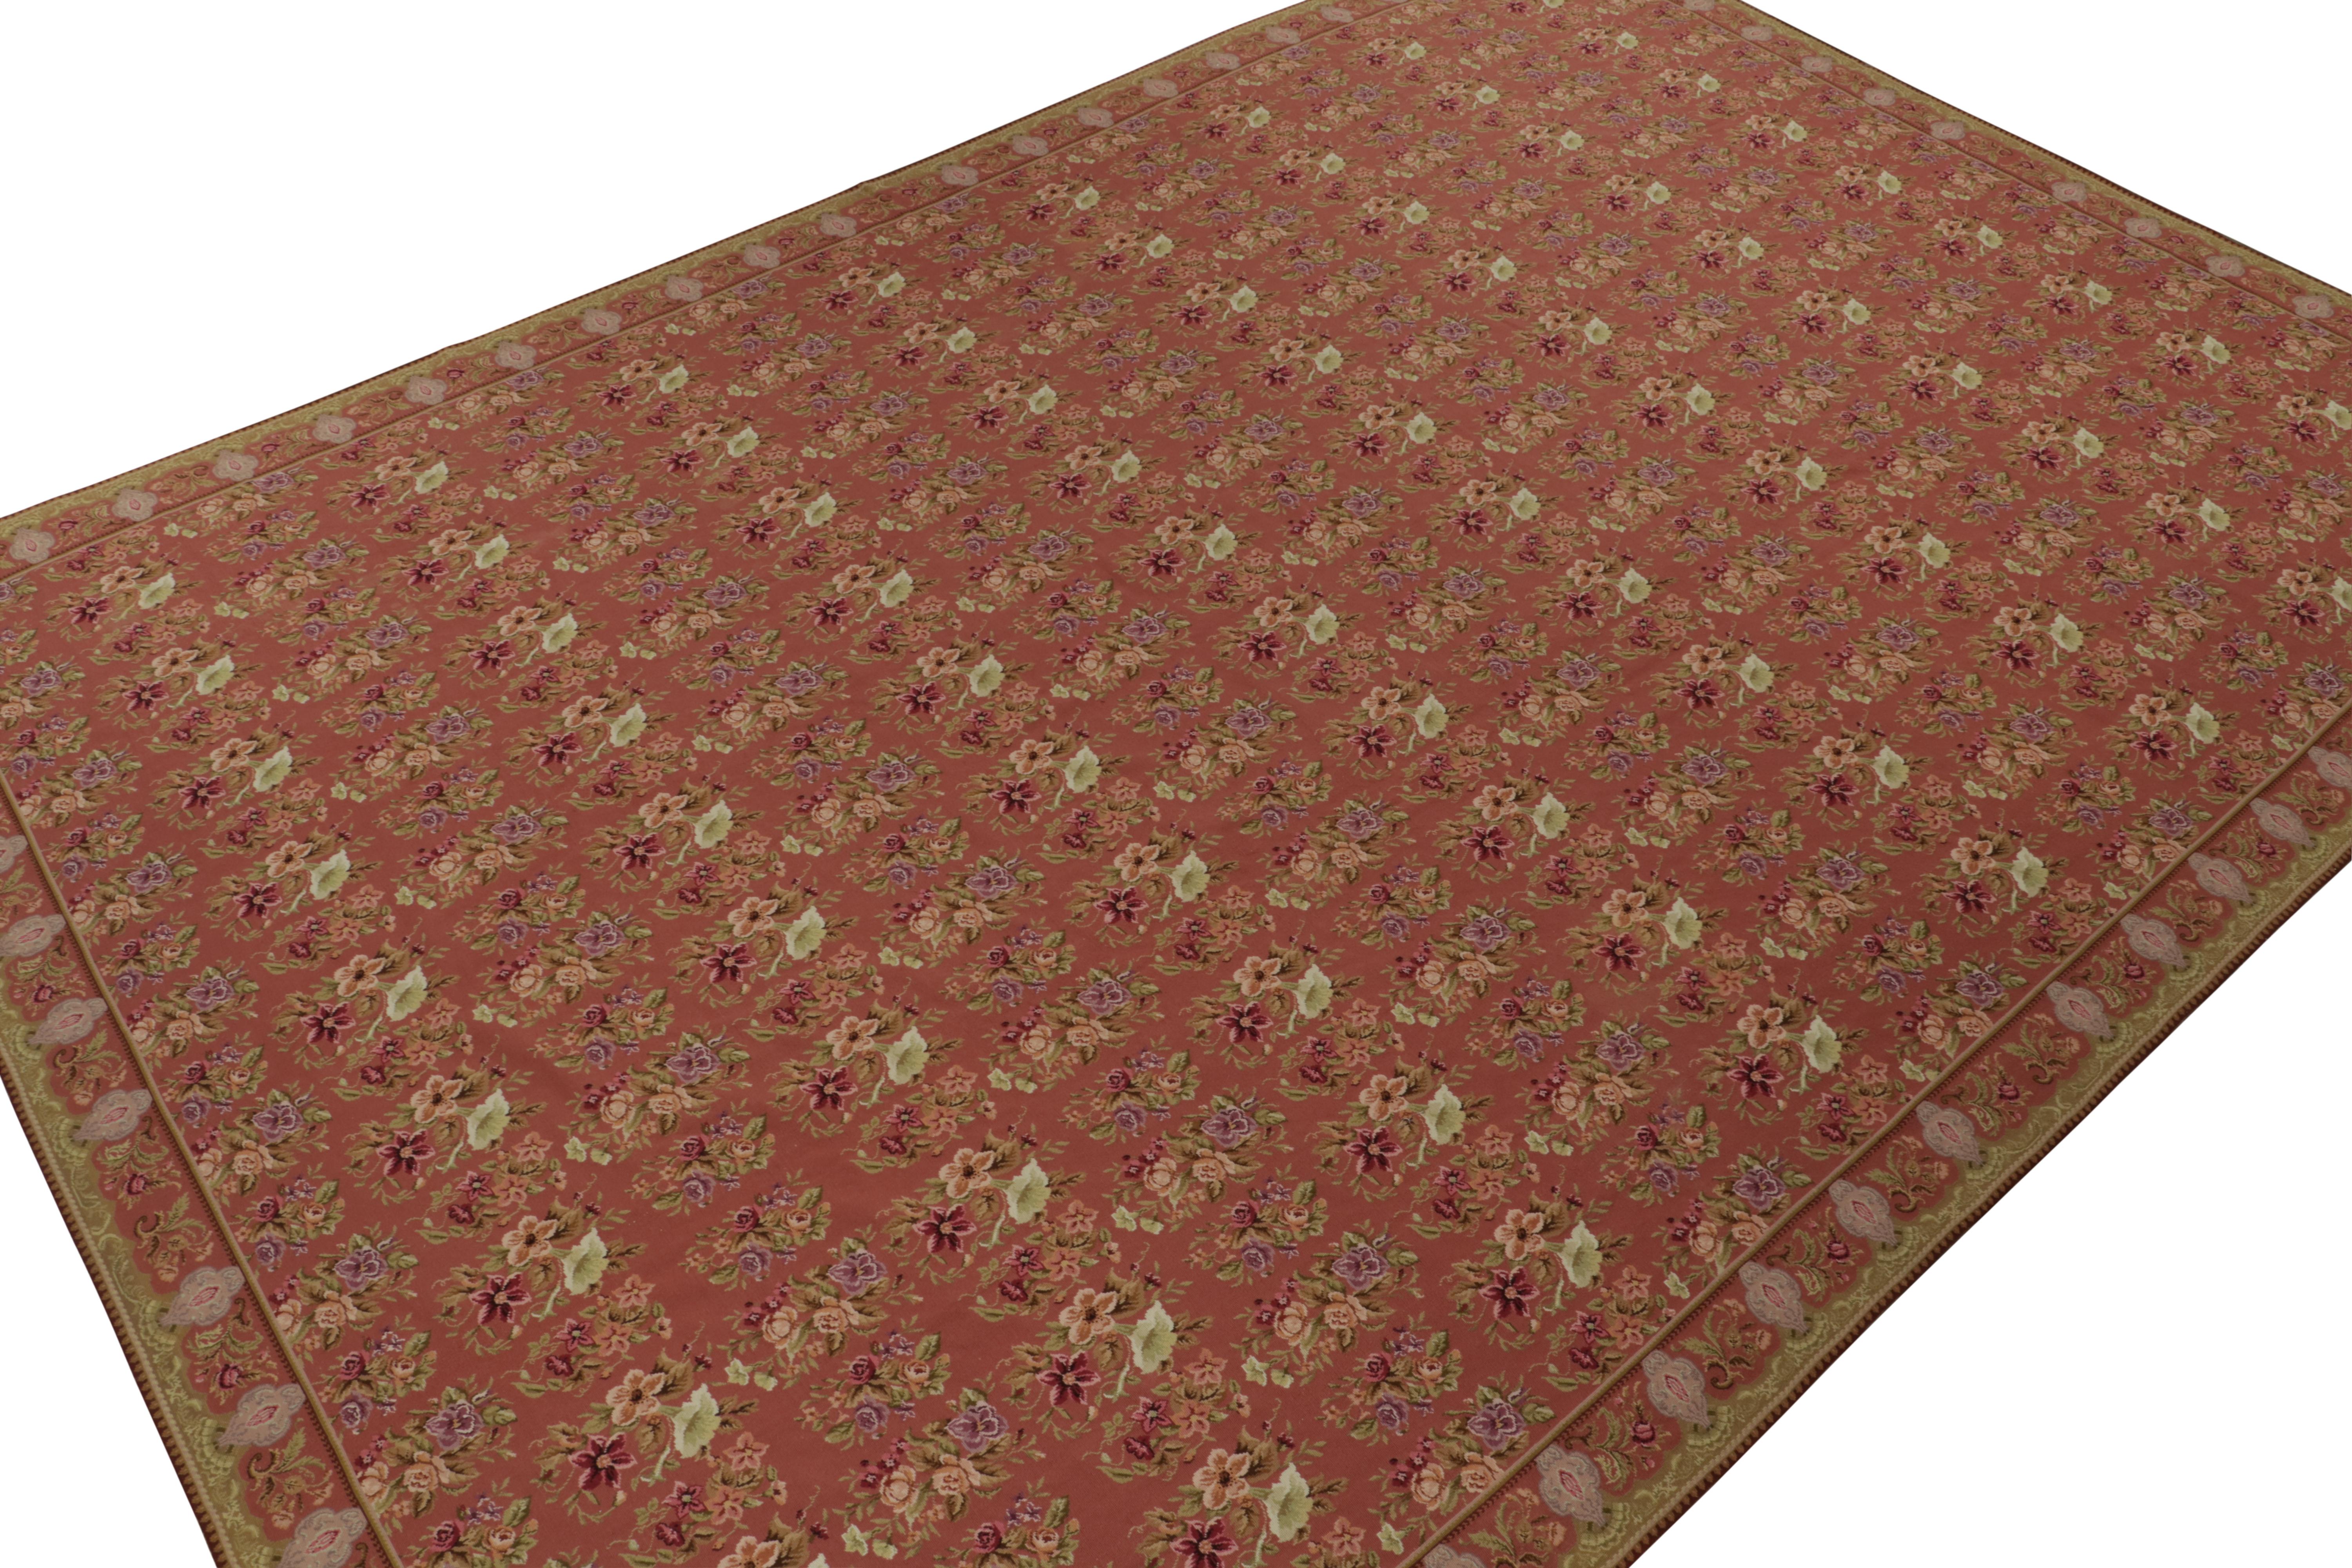 Ce tapis vintage de 12x18 est une réimpression unique d'anciennes œuvres anglaises du même style. Fait à la main en laine de Chine vers 1980-1990.

Plus loin dans la conception : 

Ce tapis particulier bénéficie d'une échelle plus gracieuse que la